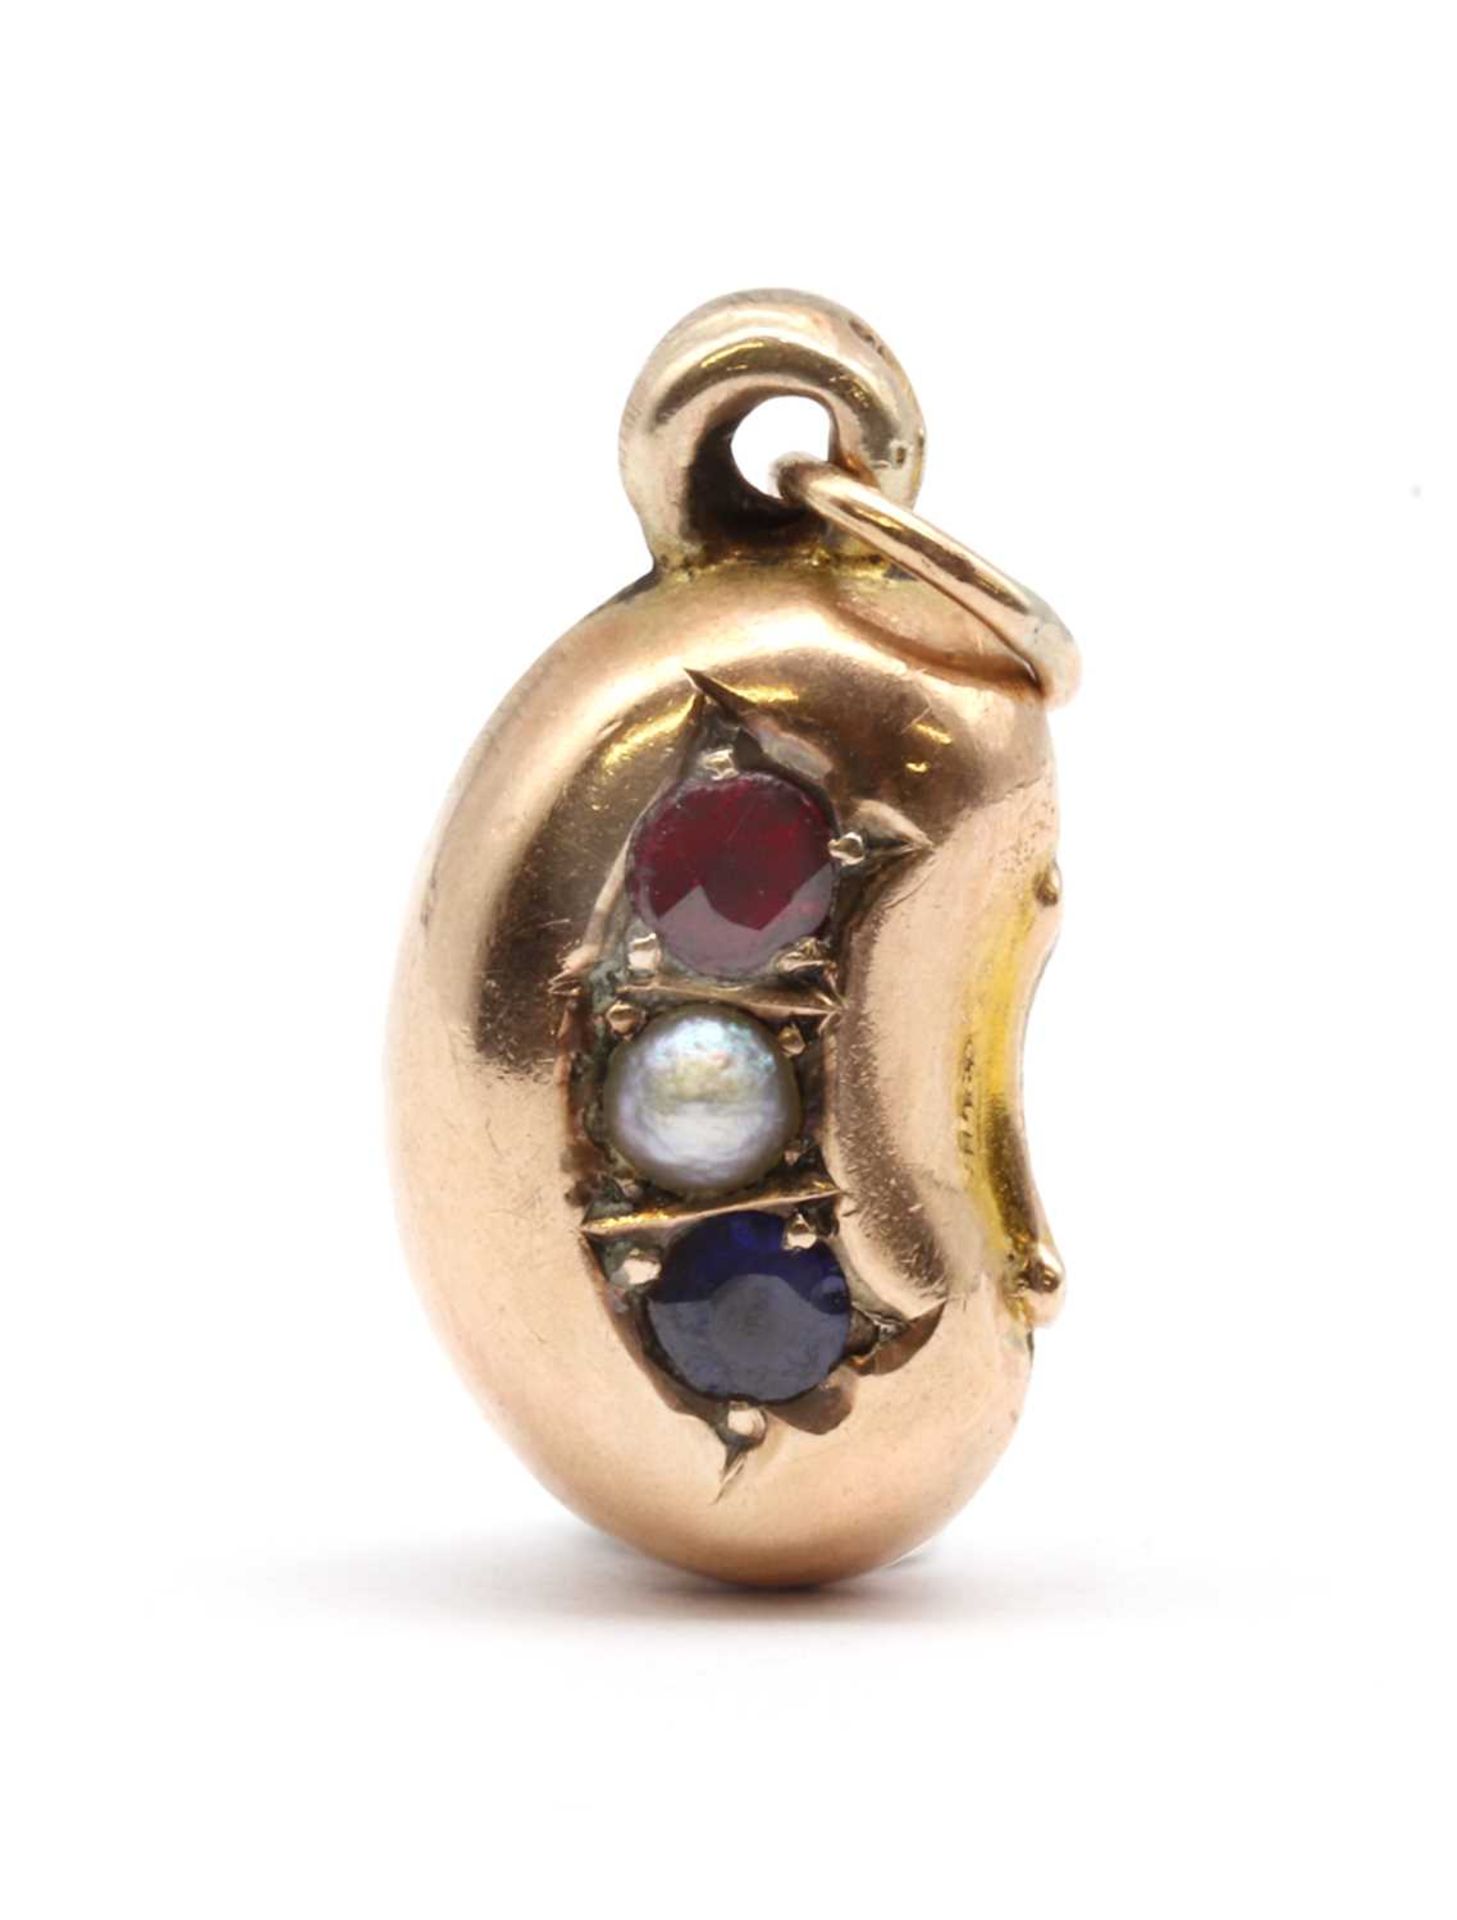 A Victorian 9ct gold hollow bean charm,